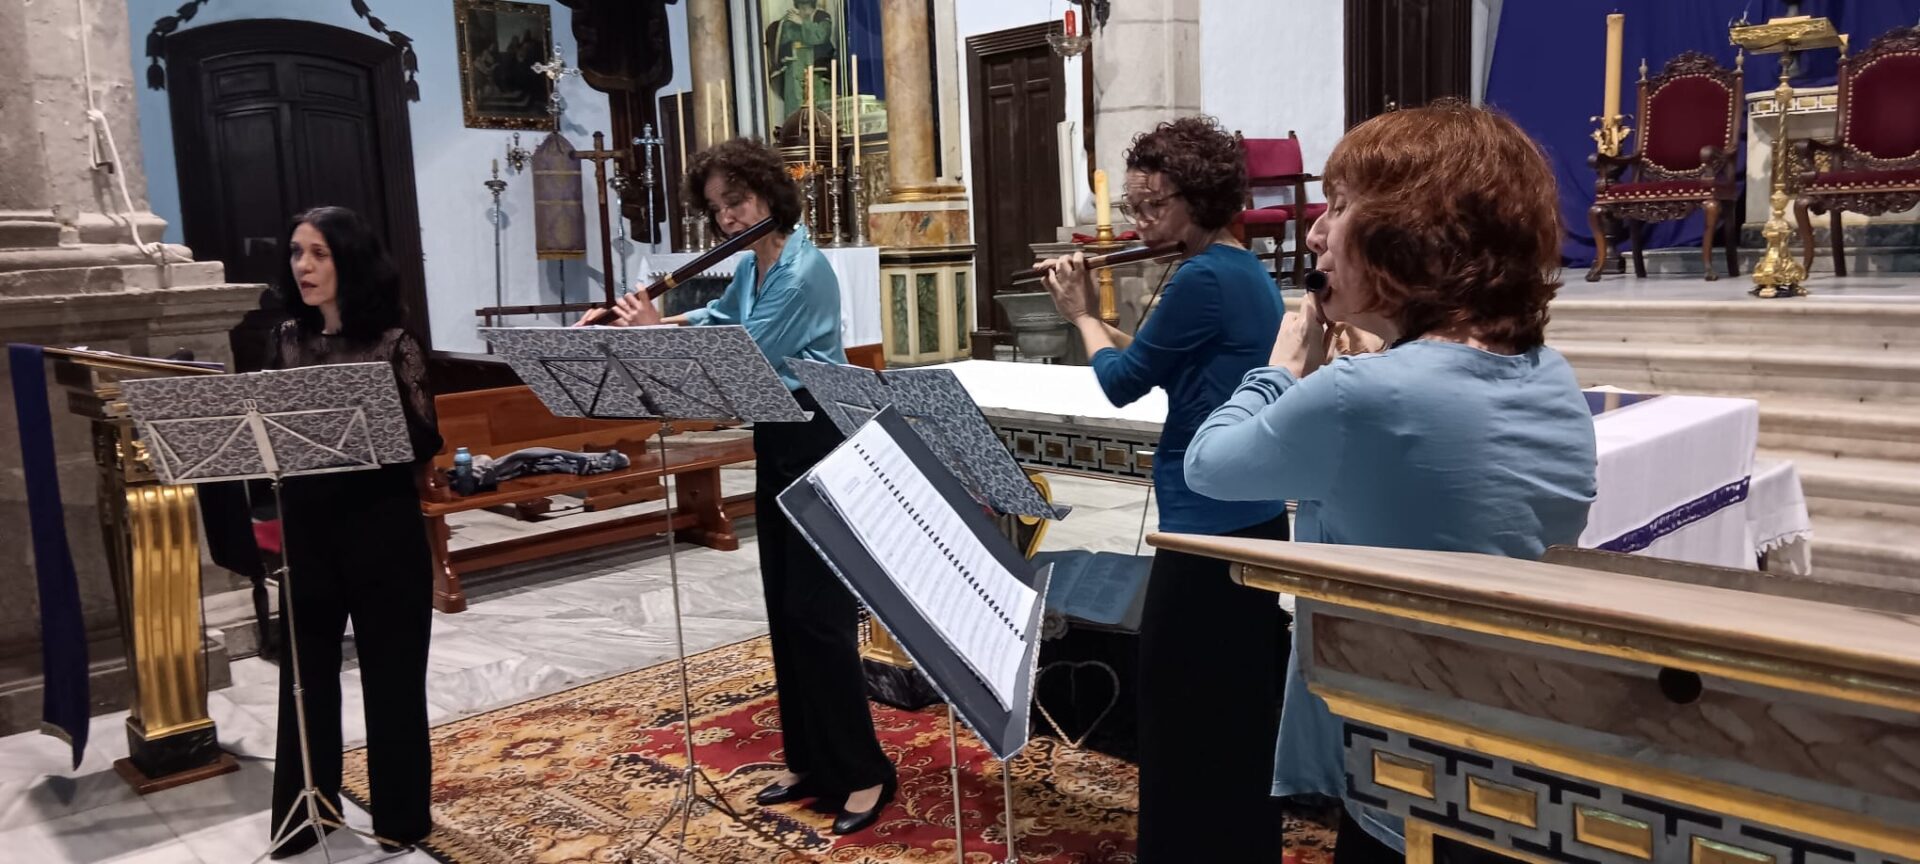 El Festival de Música Religiosa de Canarias continua sus actuaciones en El Hierro, Lanzarote y Fuerteventura